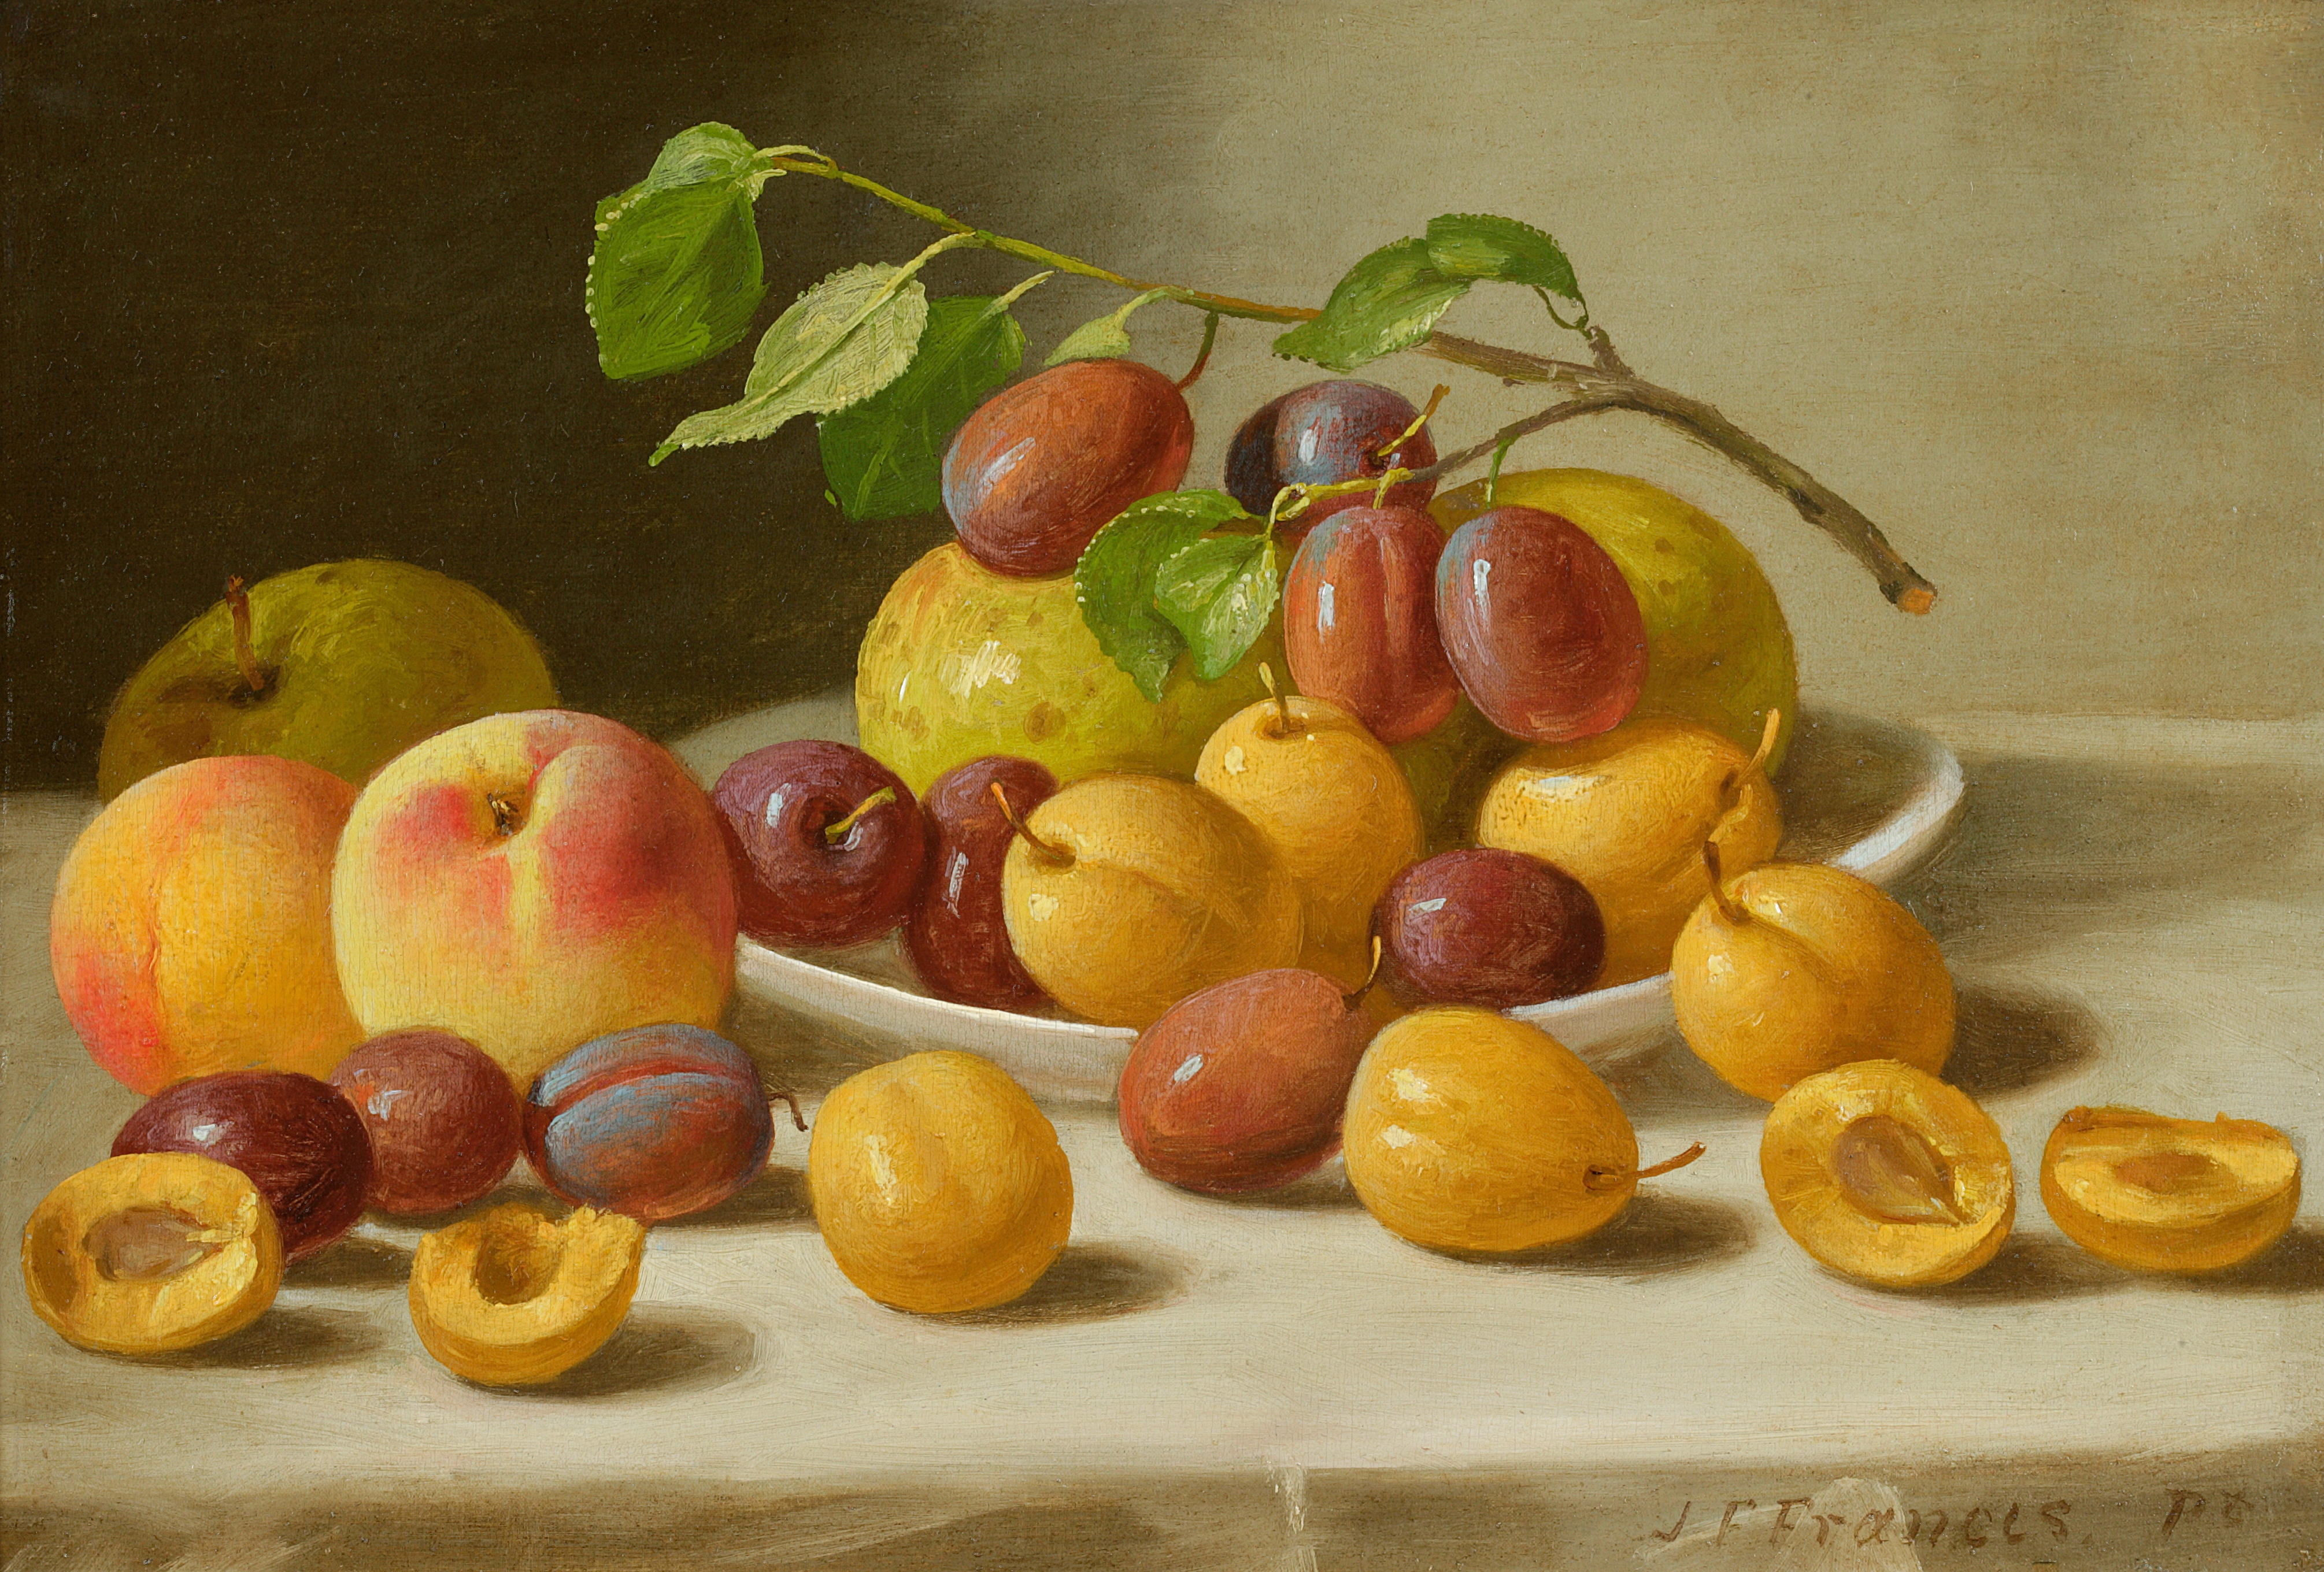 2 12 всех фруктов составляют персики. Американский художник Джон Францис. Джон Фрэнсис 1808-1886. Натюрморт Джон ф. Фрэнсис. Художник Джордж Форстер.